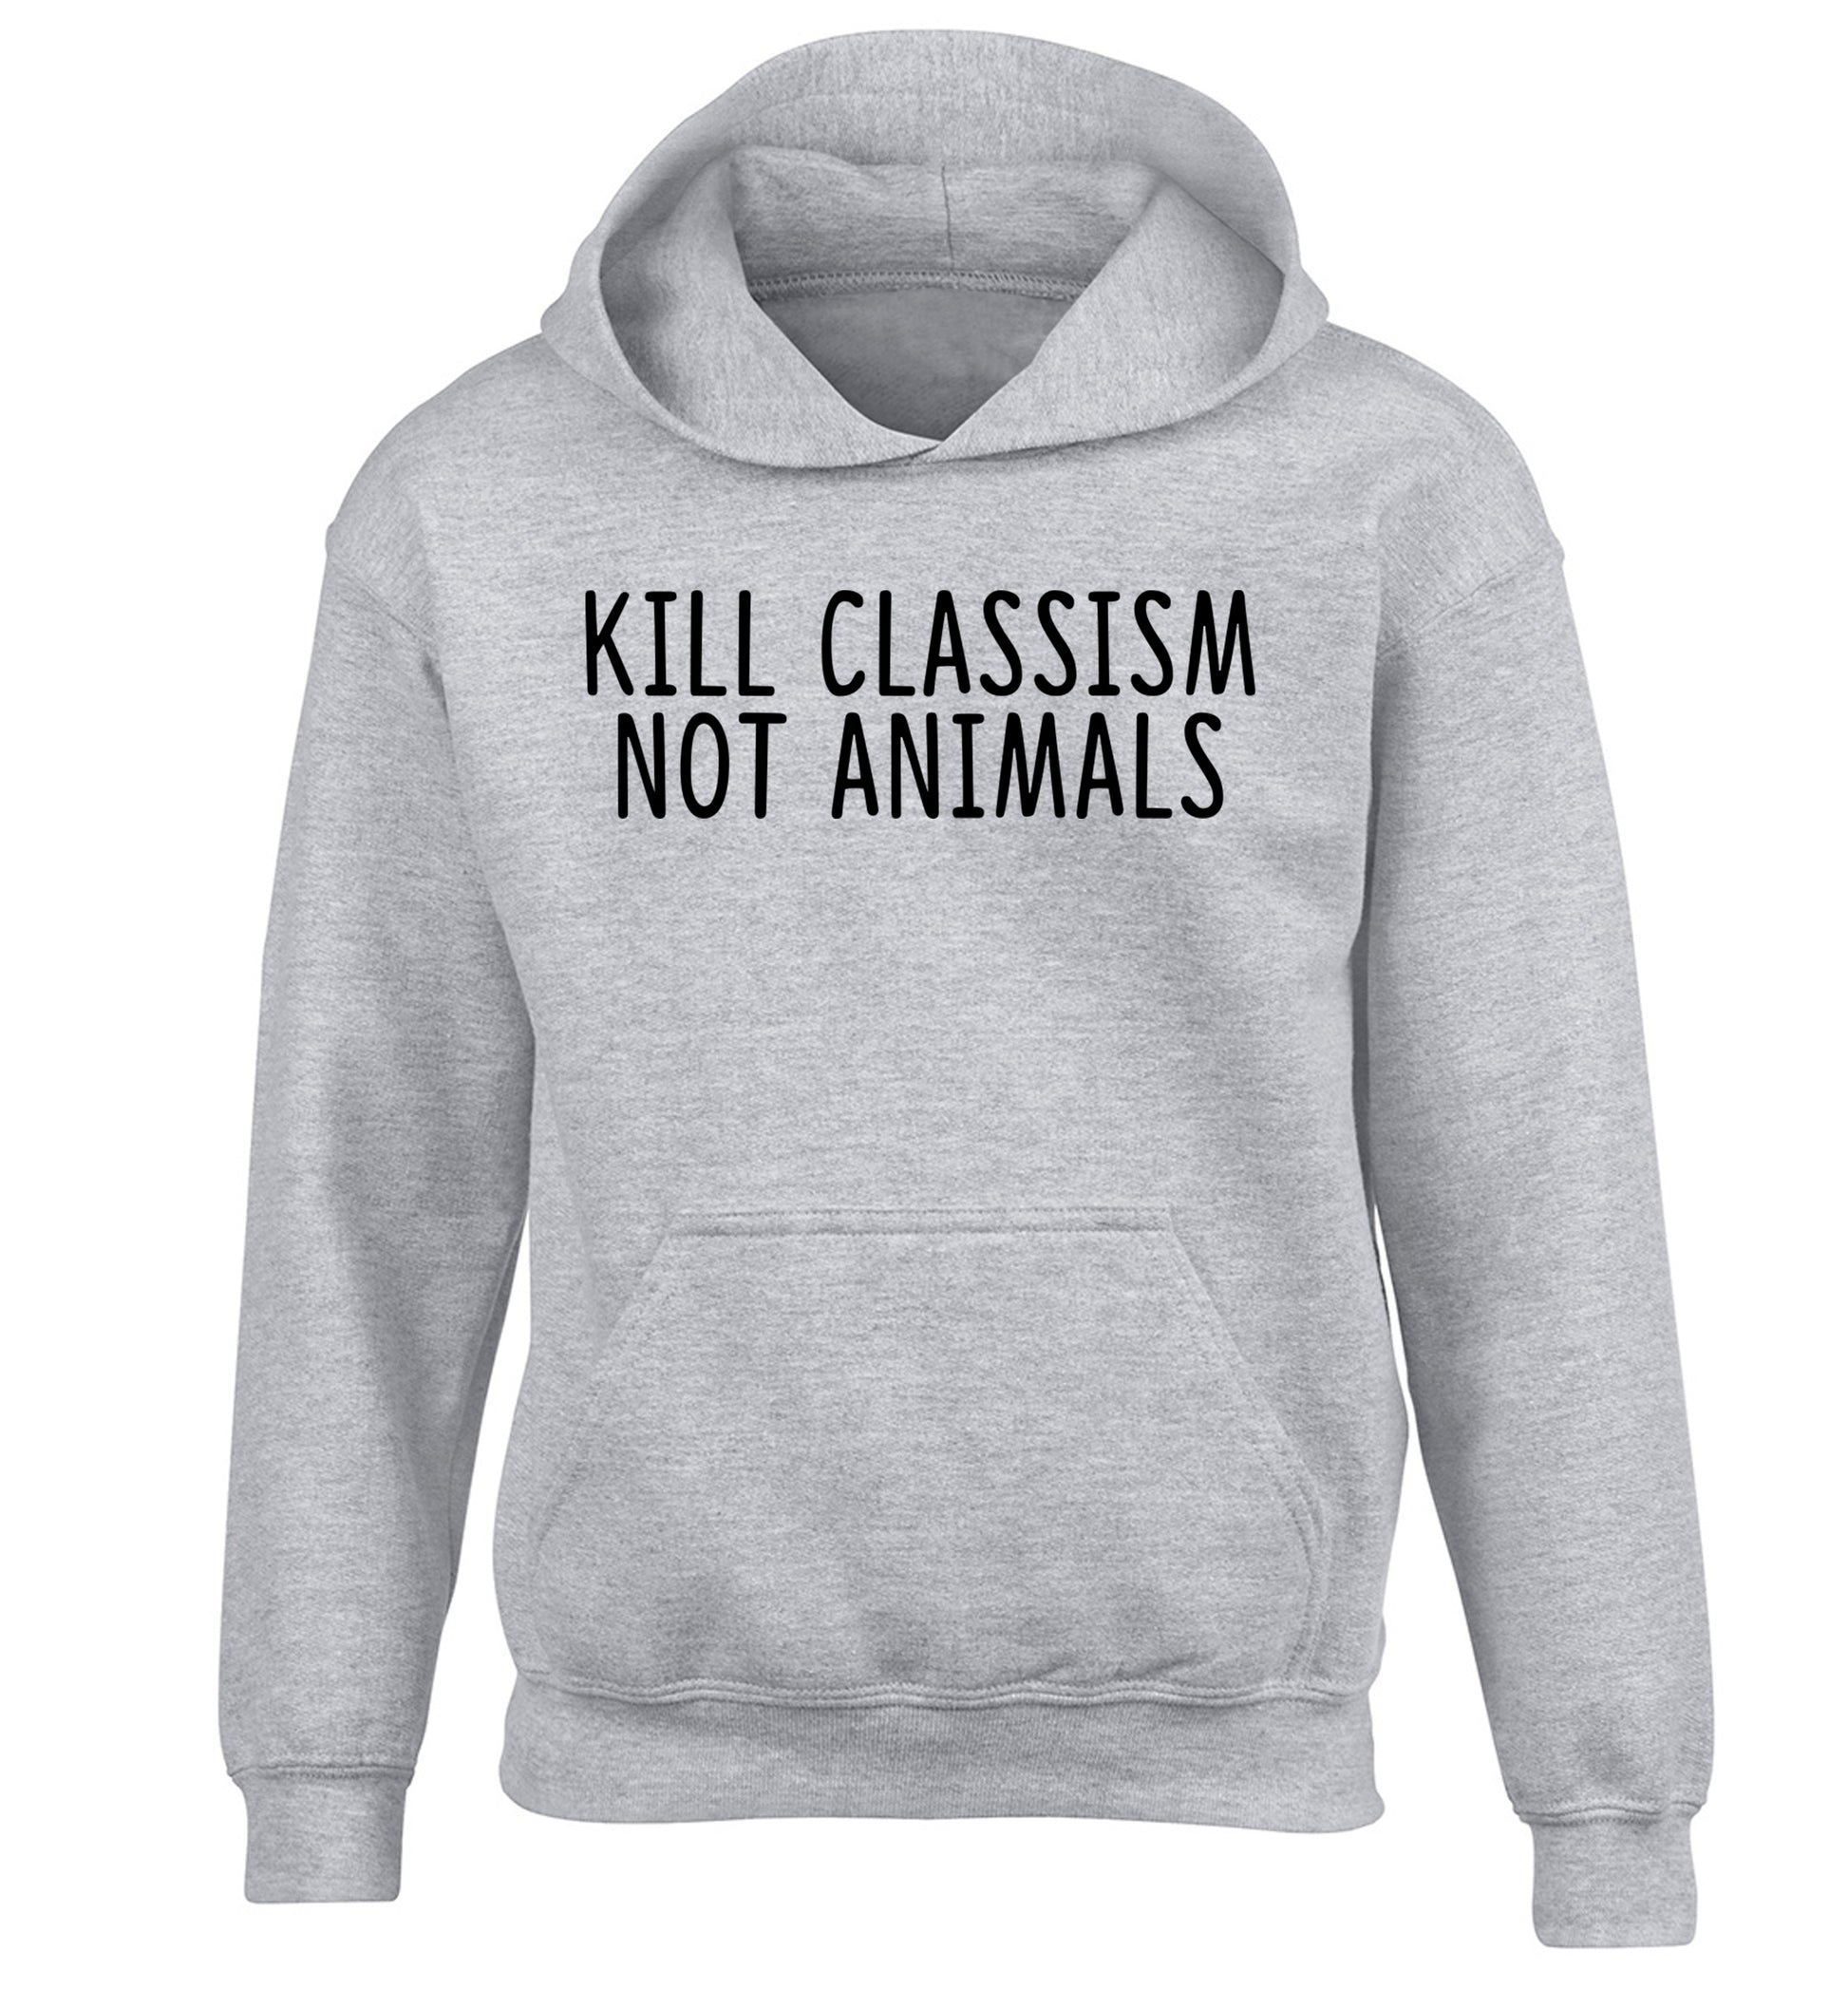 Kill Classism Not Animals children's grey hoodie 12-13 Years